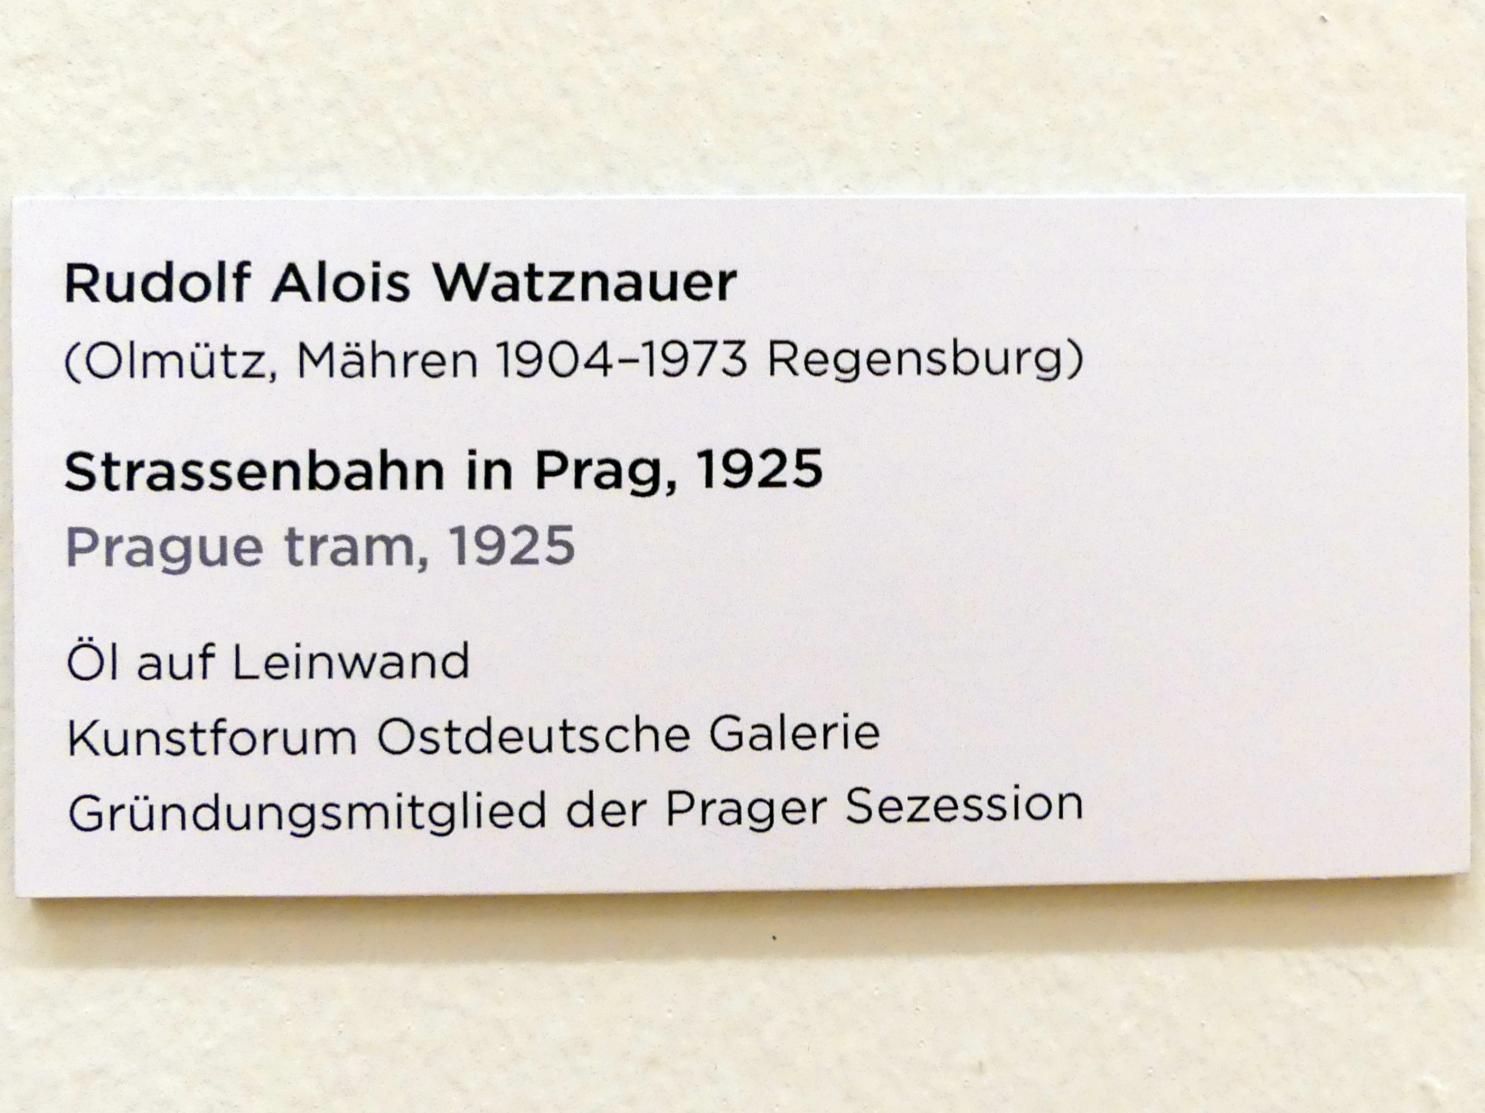 Rudolf Alois Watznauer (1925), Strassenbahn in Prag, Regensburg, Ostdeutsche Galerie, Saal 4, 1925, Bild 2/2